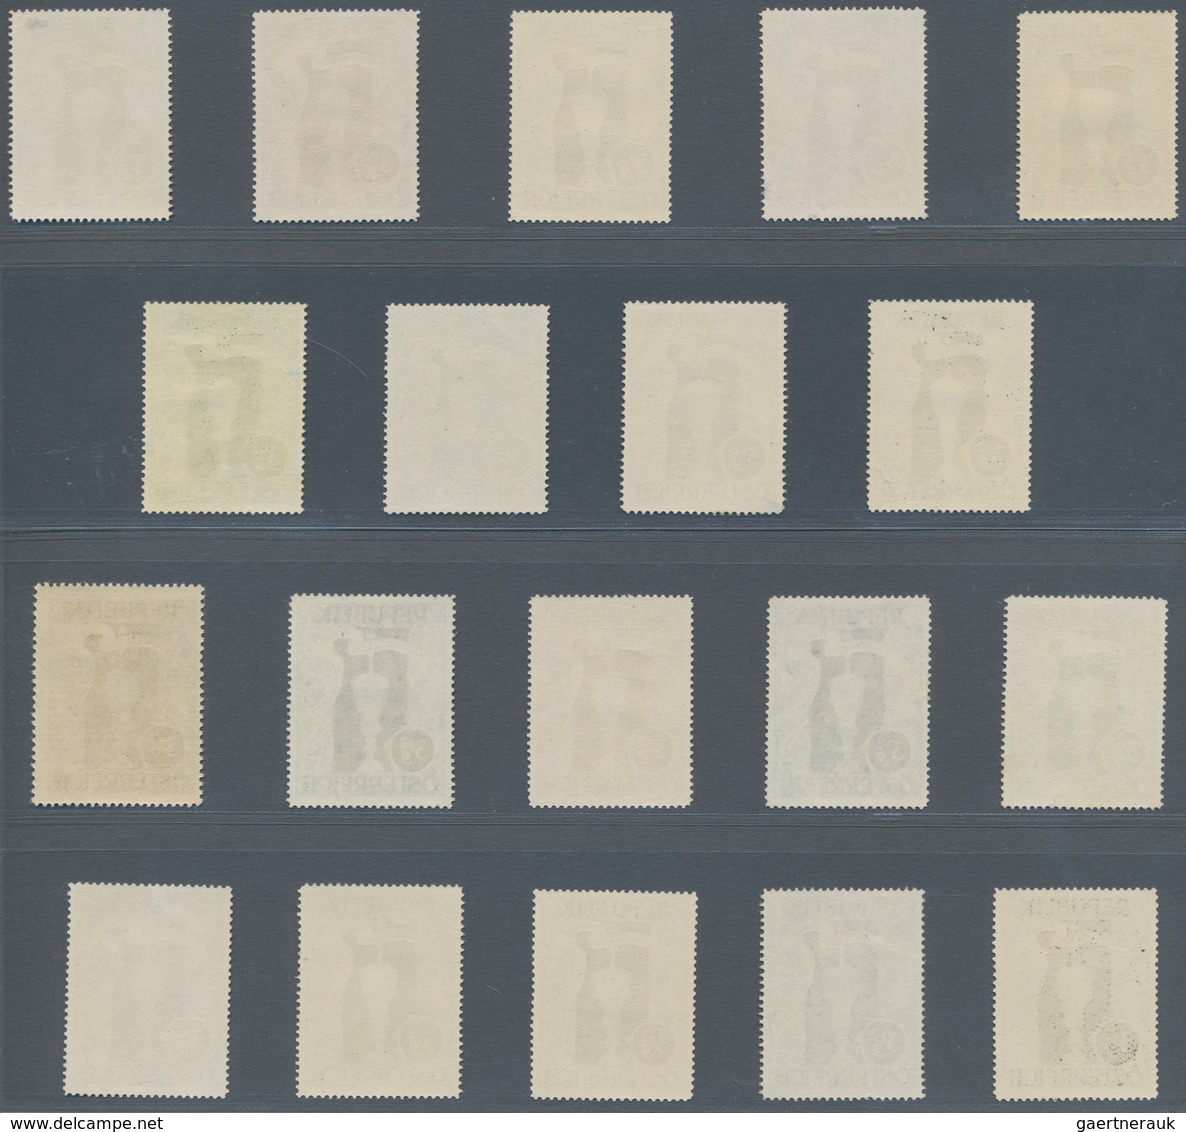 Österreich: 1947, 3 Gr. + 2 Gr. "Kunstausstellung", 19 verschiedene Farbproben in Linienzähnung 14½,